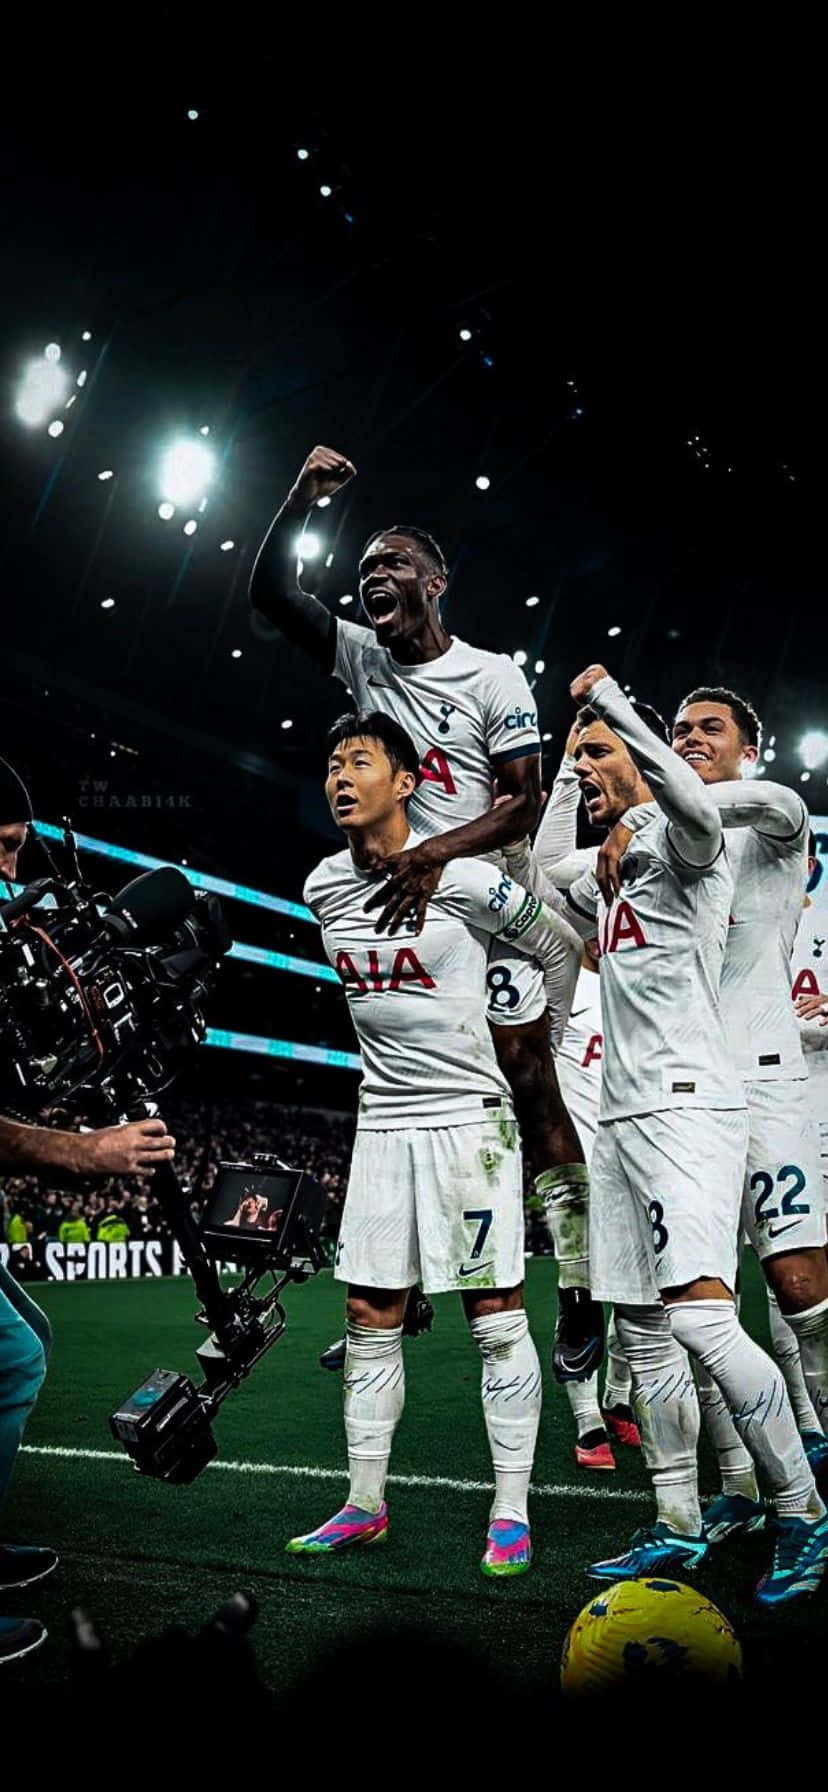 Soccer_ Team_ Celebration_ Moment.jpg Wallpaper